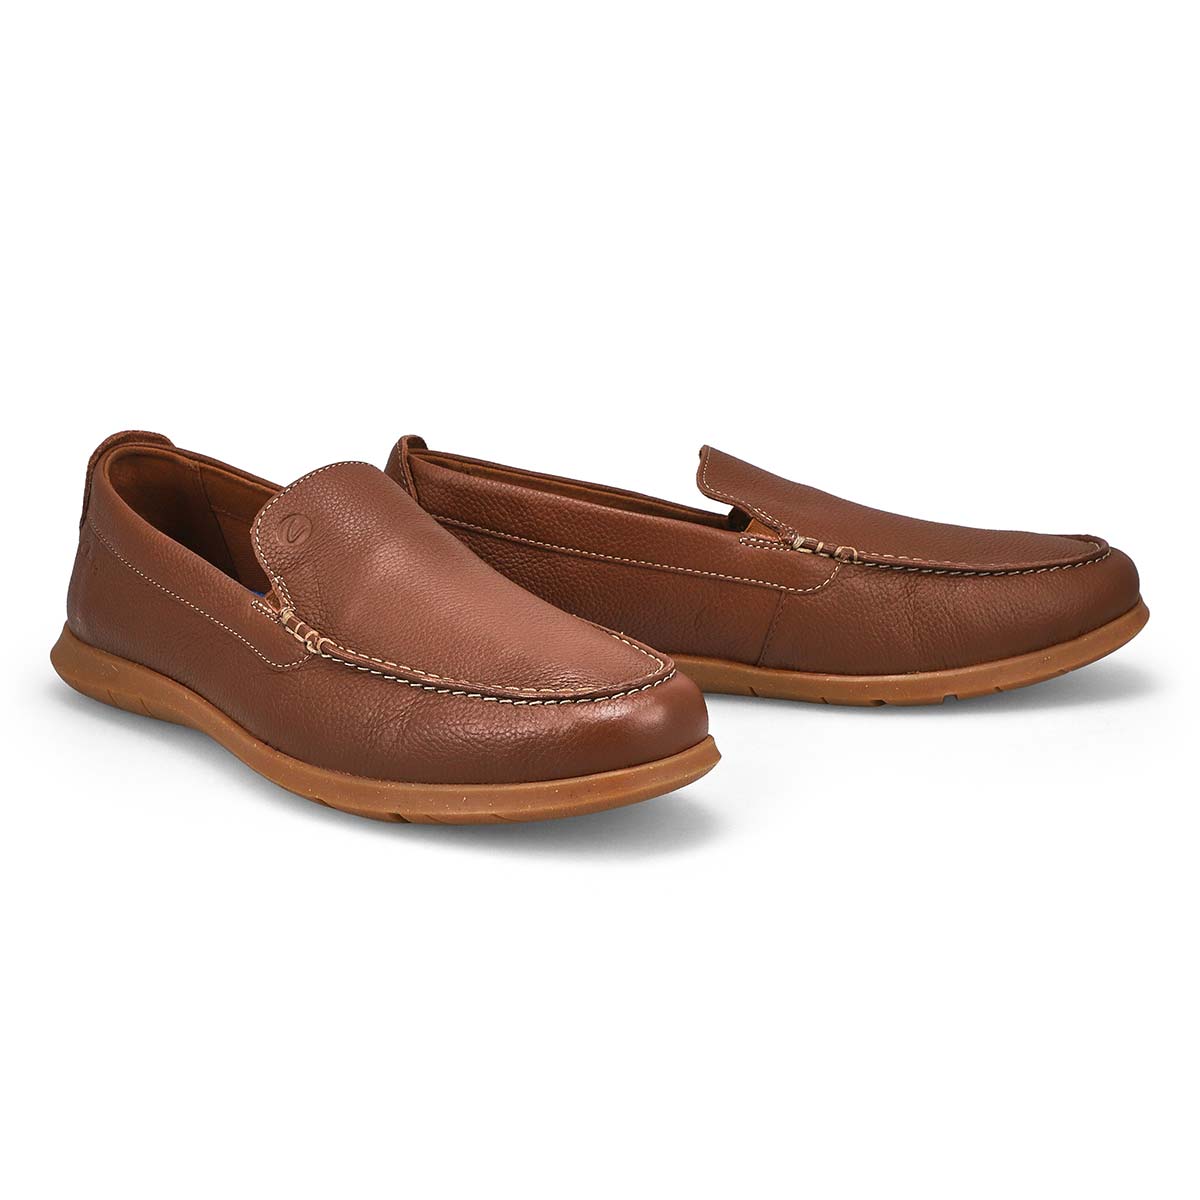 Chaussure décontractée FLEXWAY STEP, brun clair, hommes - Large